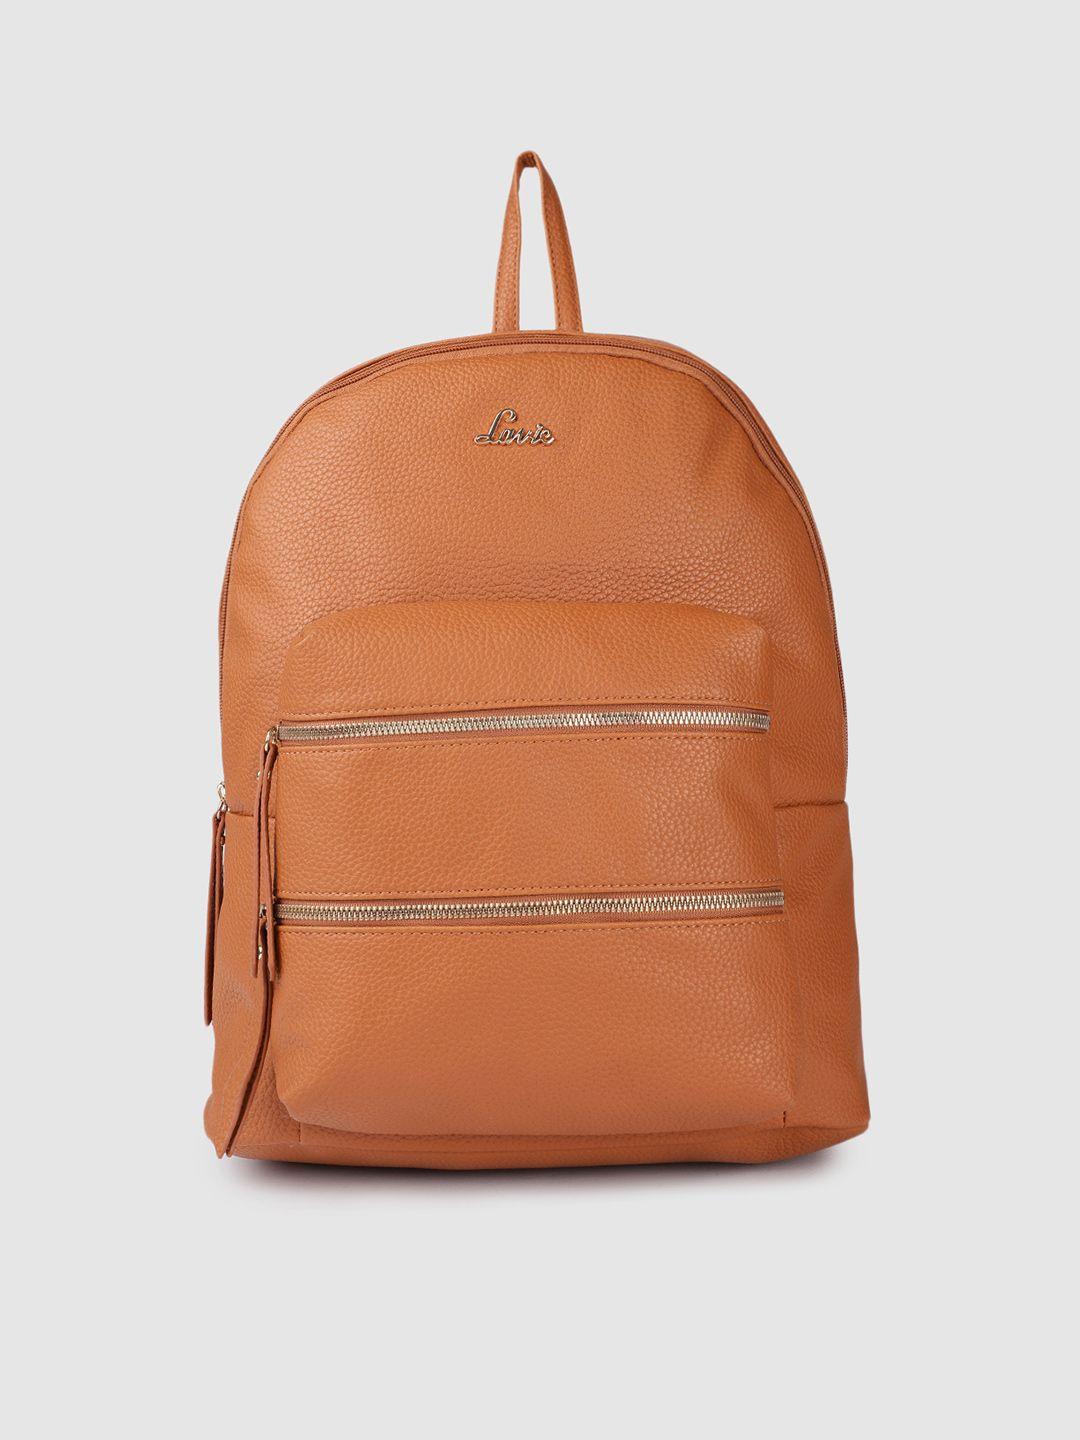 lavie-hazel-women-tan-brown-laptop-backpack